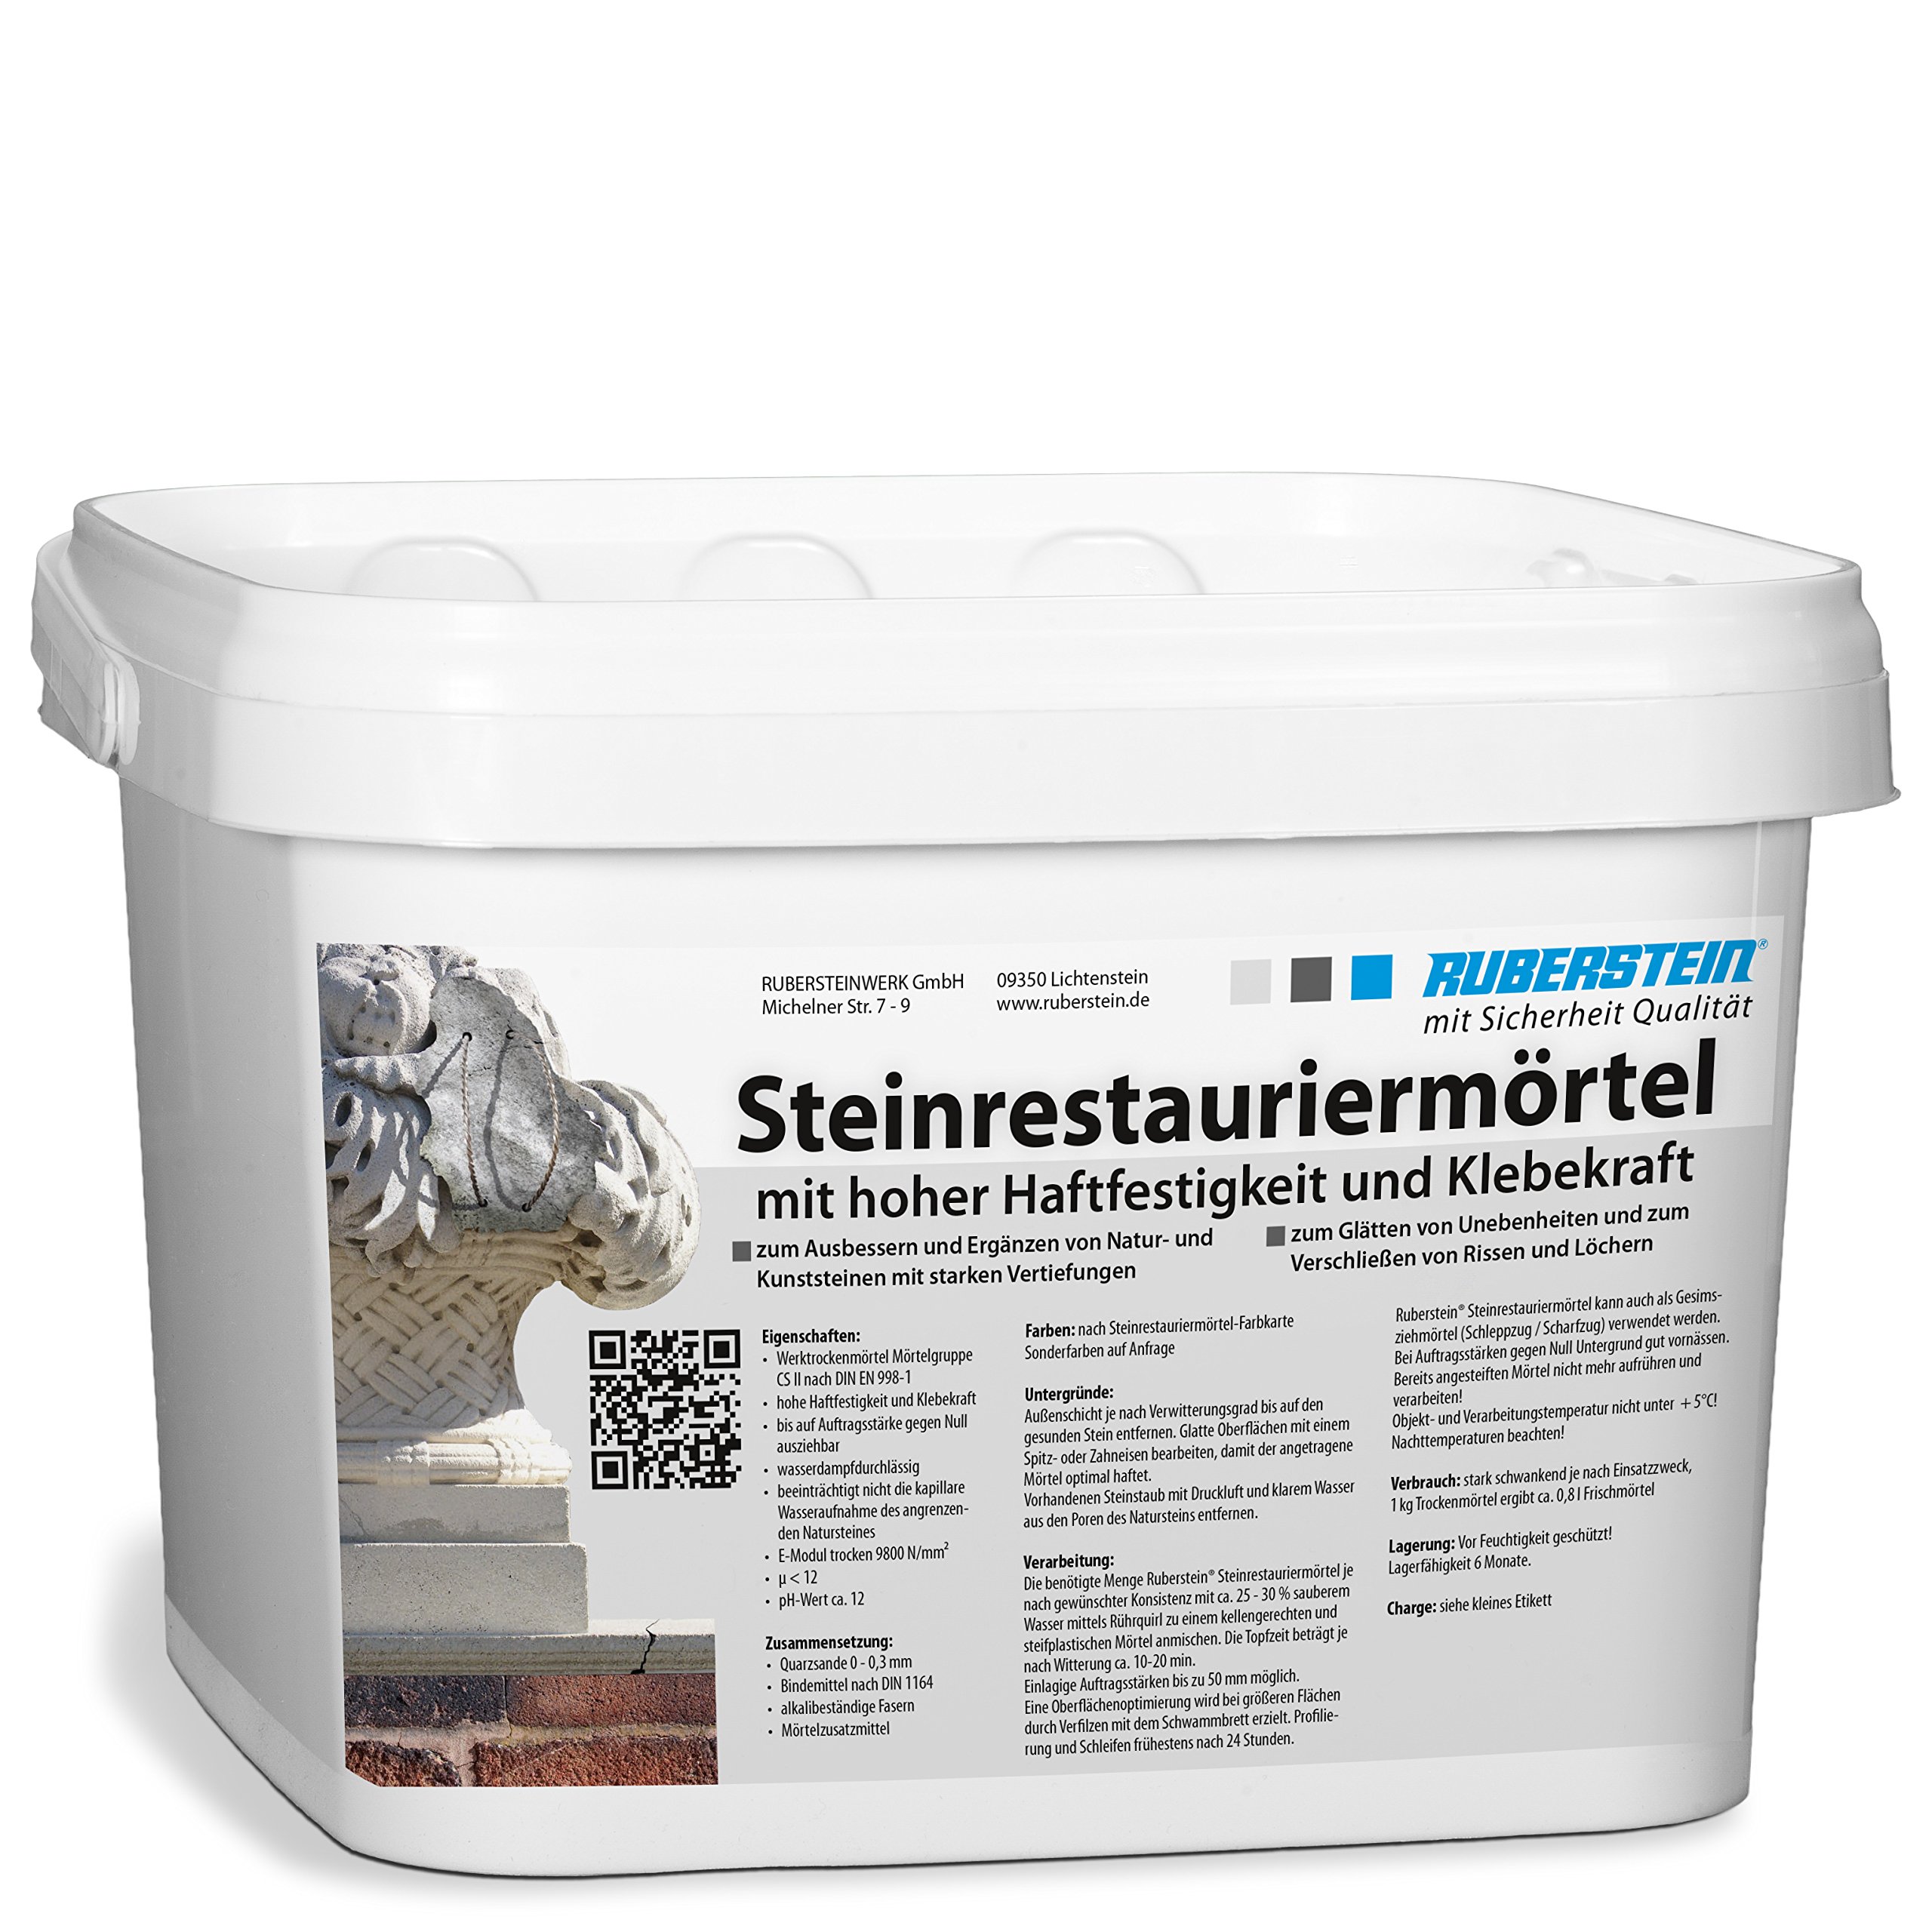 Ruberstein® Steinrestauriermörtel/Reparaturmörtel/Mörtel für Sandstein 5 kg im Eimer (porphyrbraun)